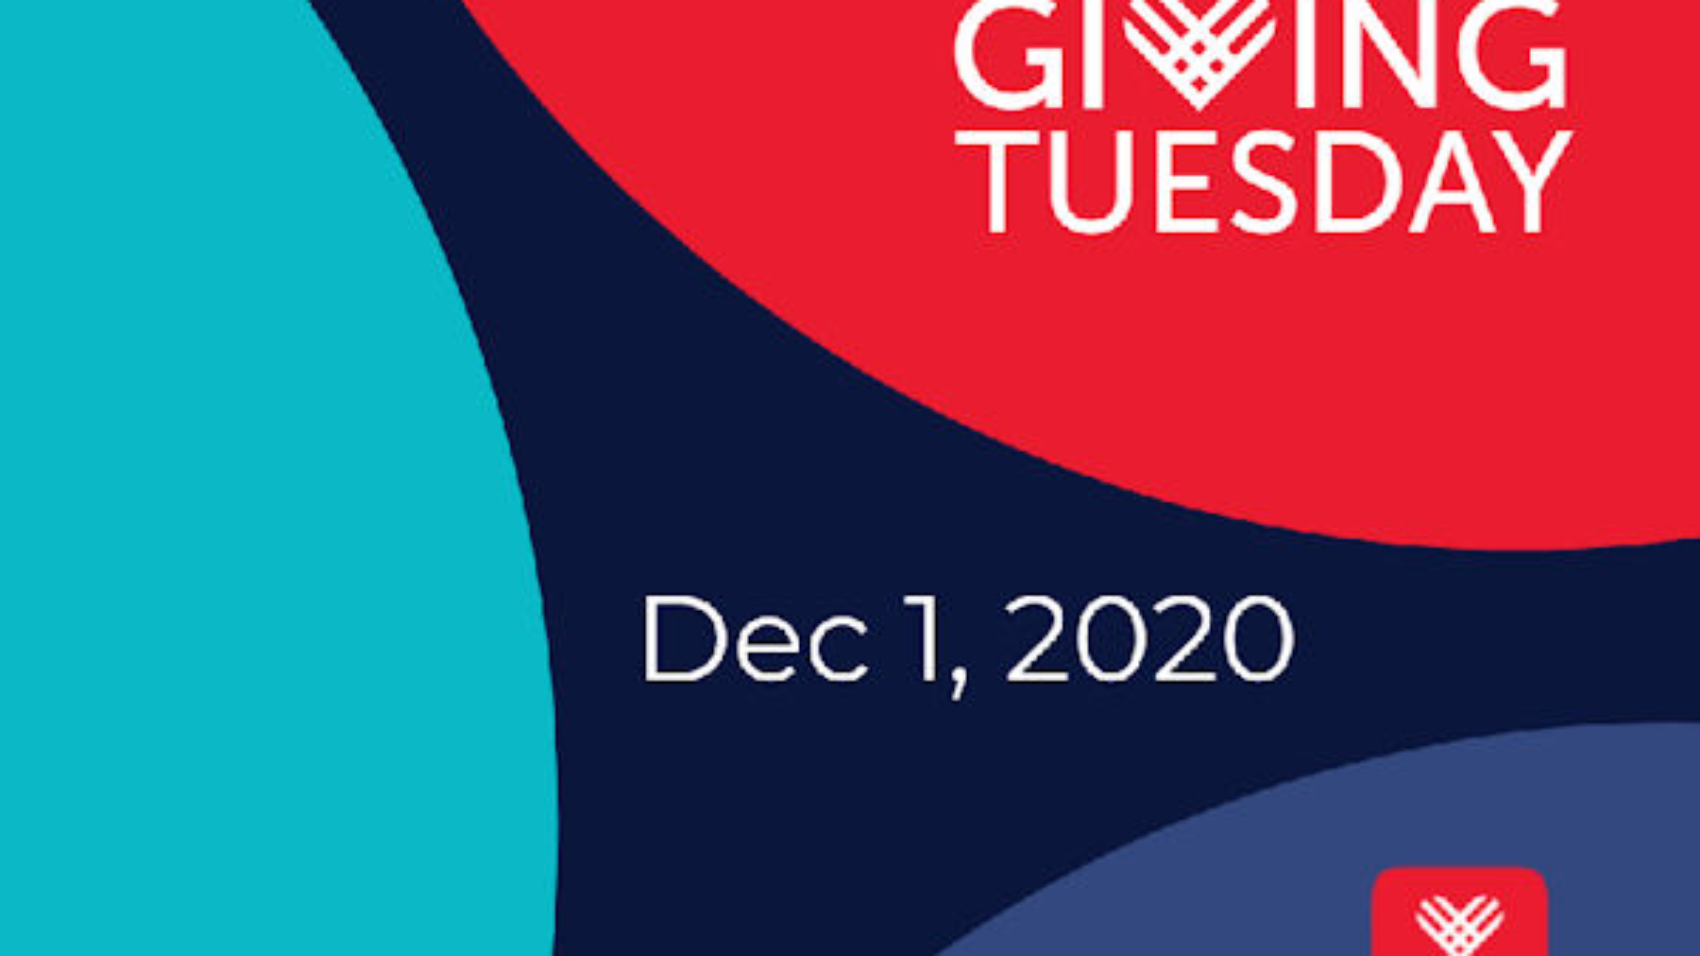 logo-giving-tuesday-december-1-2020